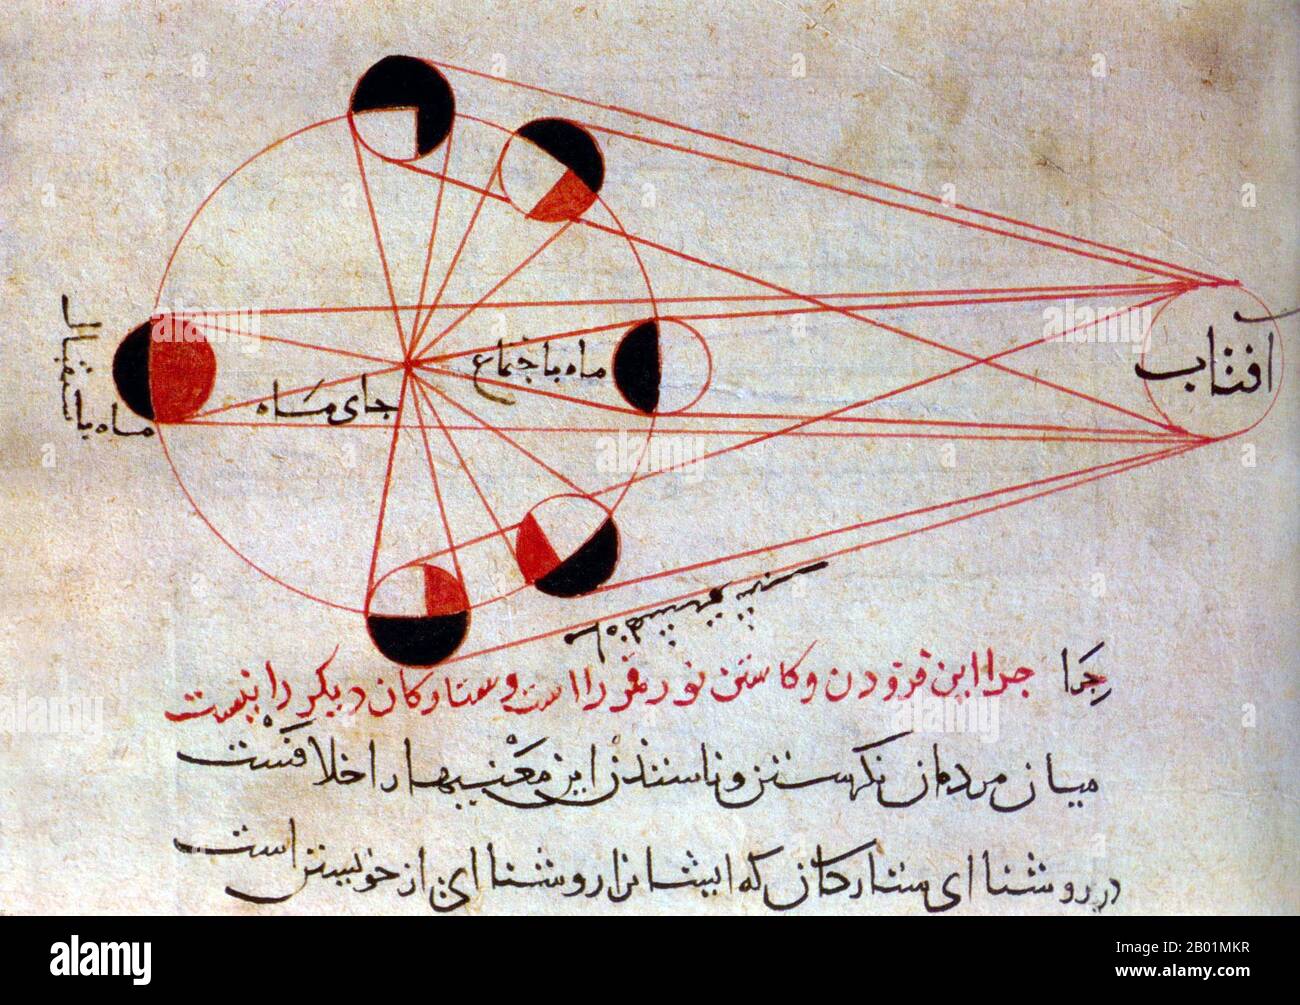 Iran/Afghanistan: Astronomische Illustration der verschiedenen Mondphasen aus einer Kopie des „Kitab al-Tafhim“ von Abu Rayhan Al-Biruni (4. September 973 bis 9. Dezember 1048). Gouache auf Papier, um 1750. Abū al-Rayḥān Muḥammad ibn Aḥmad al-Bīrūnī, lateinisch Alberonius und englisch Al-Biruni, war ein iranisch-chwarazmischer muslimischer Gelehrter und Polymath des 11. Jahrhunderts n. Chr. Al-Biruni gilt als einer der größten Gelehrten der mittelalterlichen islamischen Ära und war gut vertraut in Physik, Mathematik, Astronomie und Naturwissenschaften und zeichnete sich auch als Historiker aus. Stockfoto